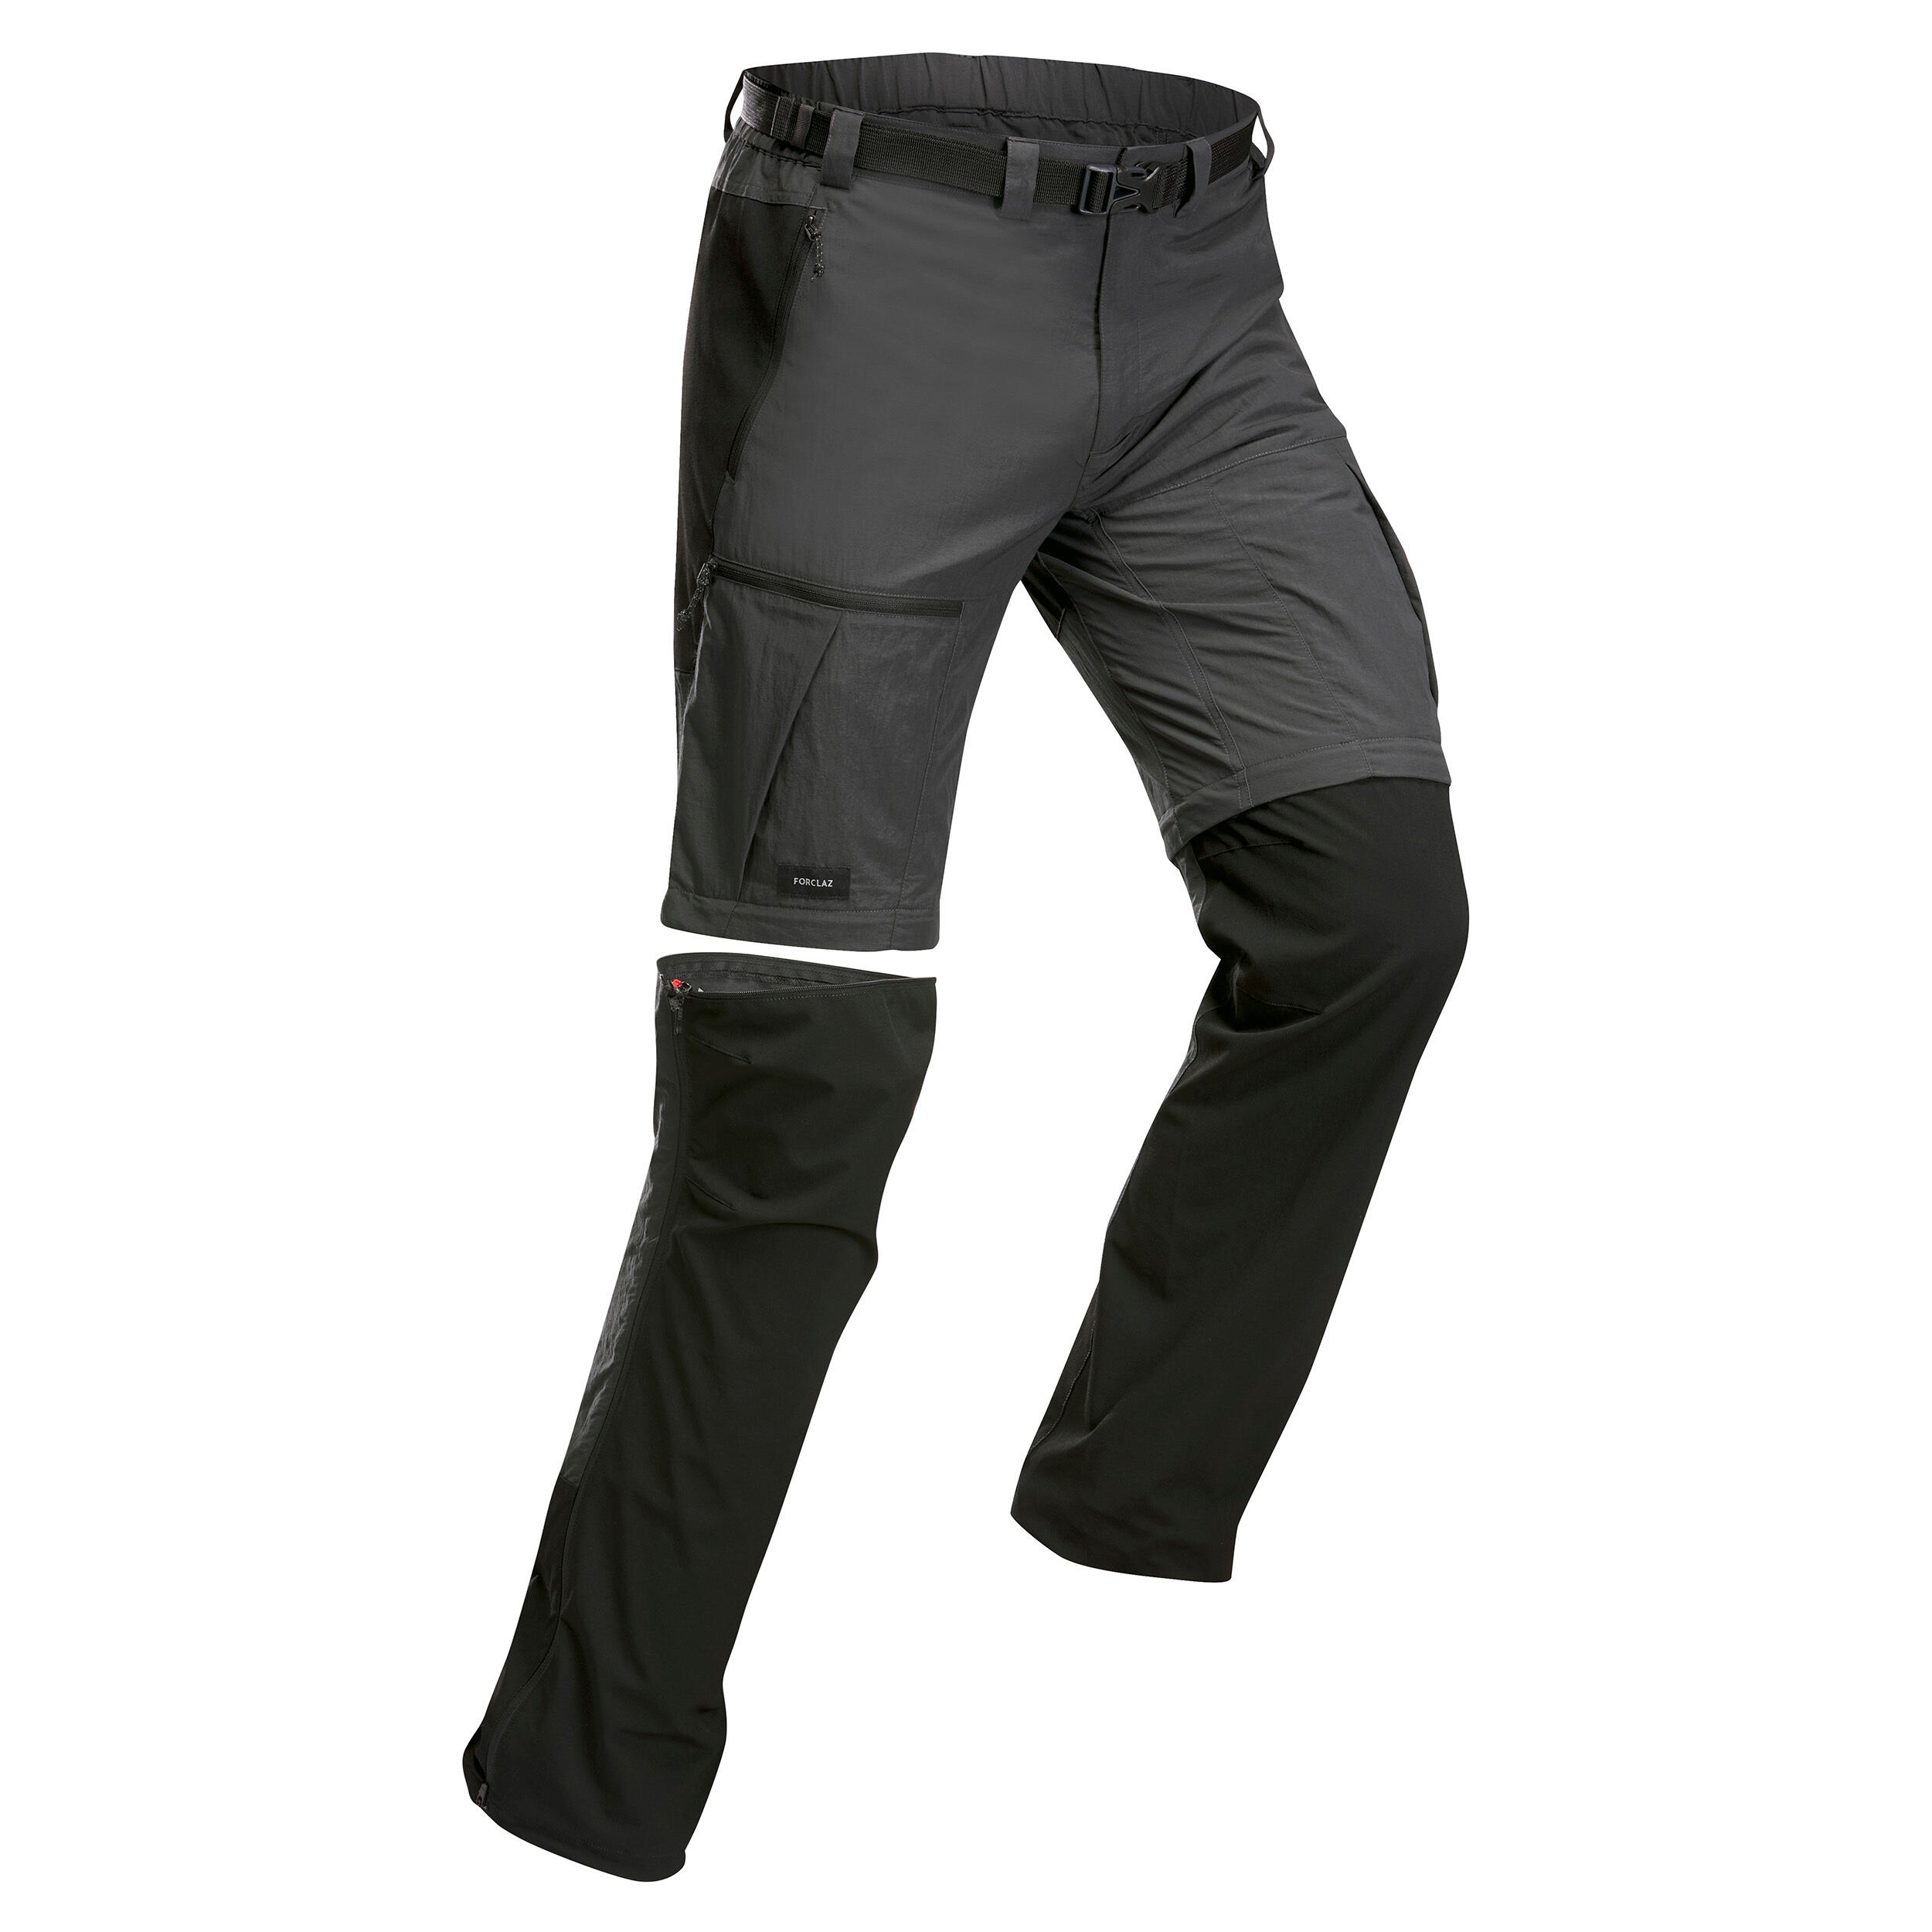 Decathlon | Pantaloni modulabili trekking uomo MT500 grigi |  Forclaz